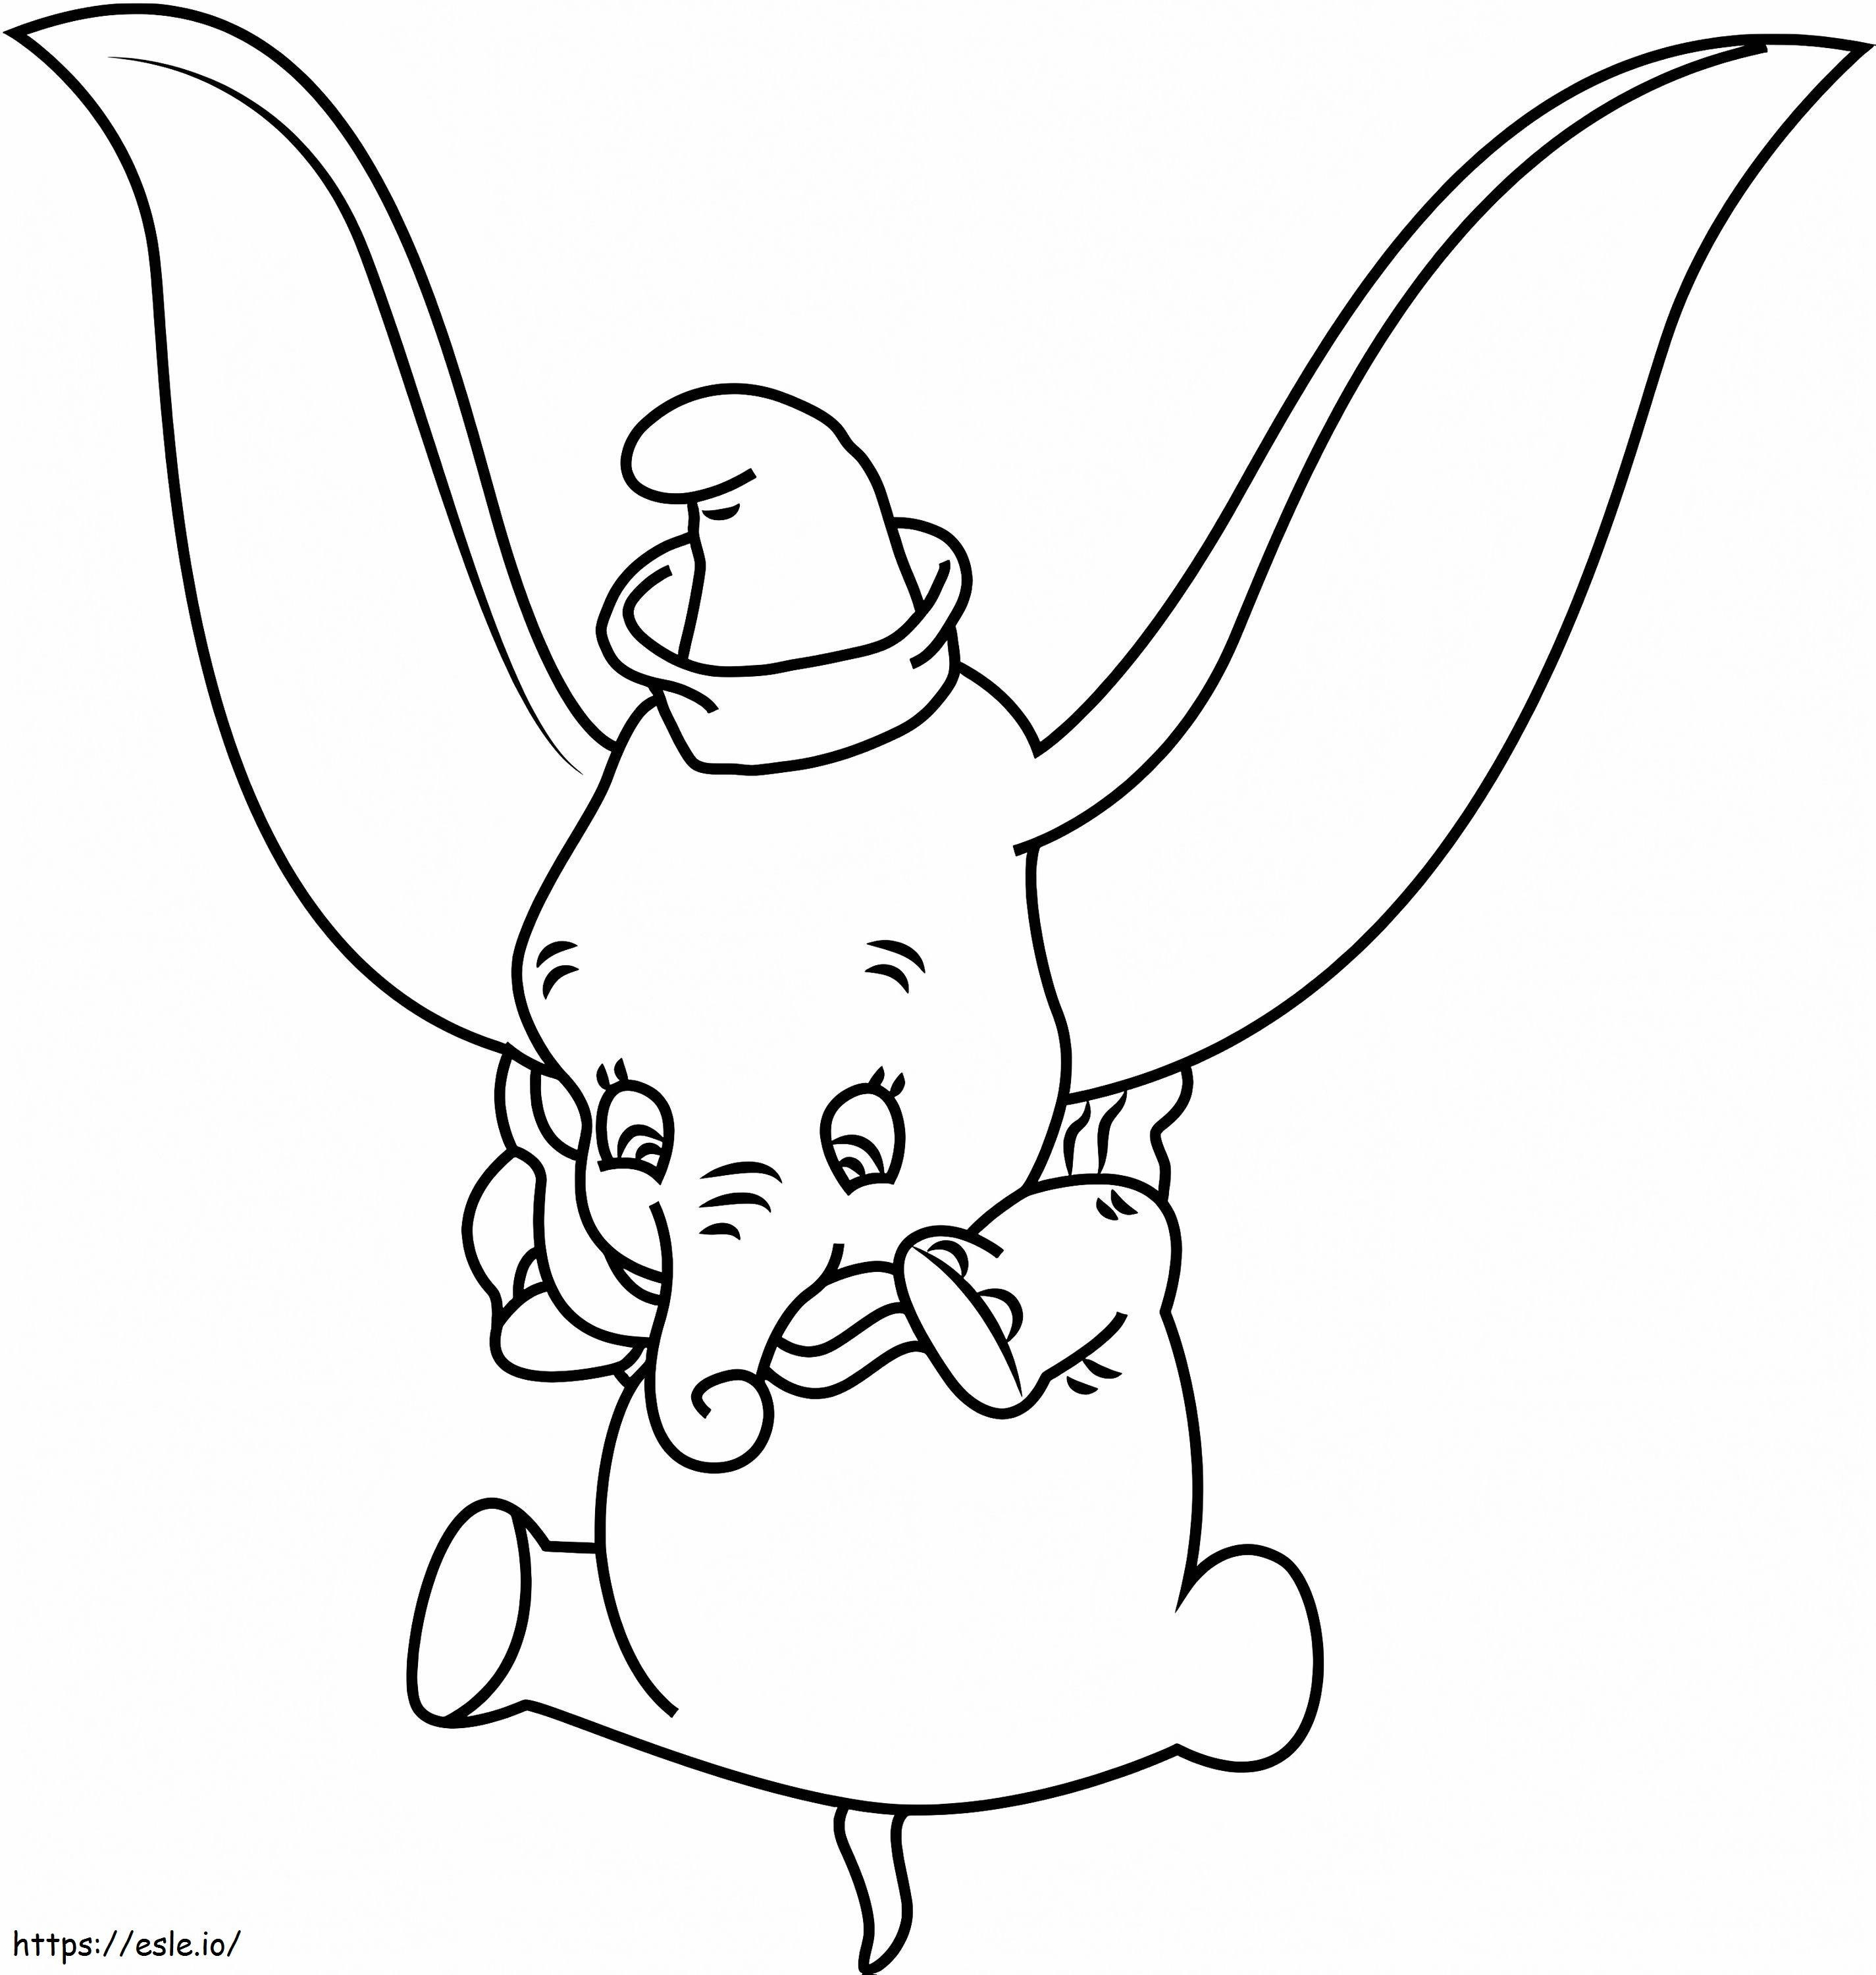 1530931285 Dumbo Jumping A4 ausmalbilder